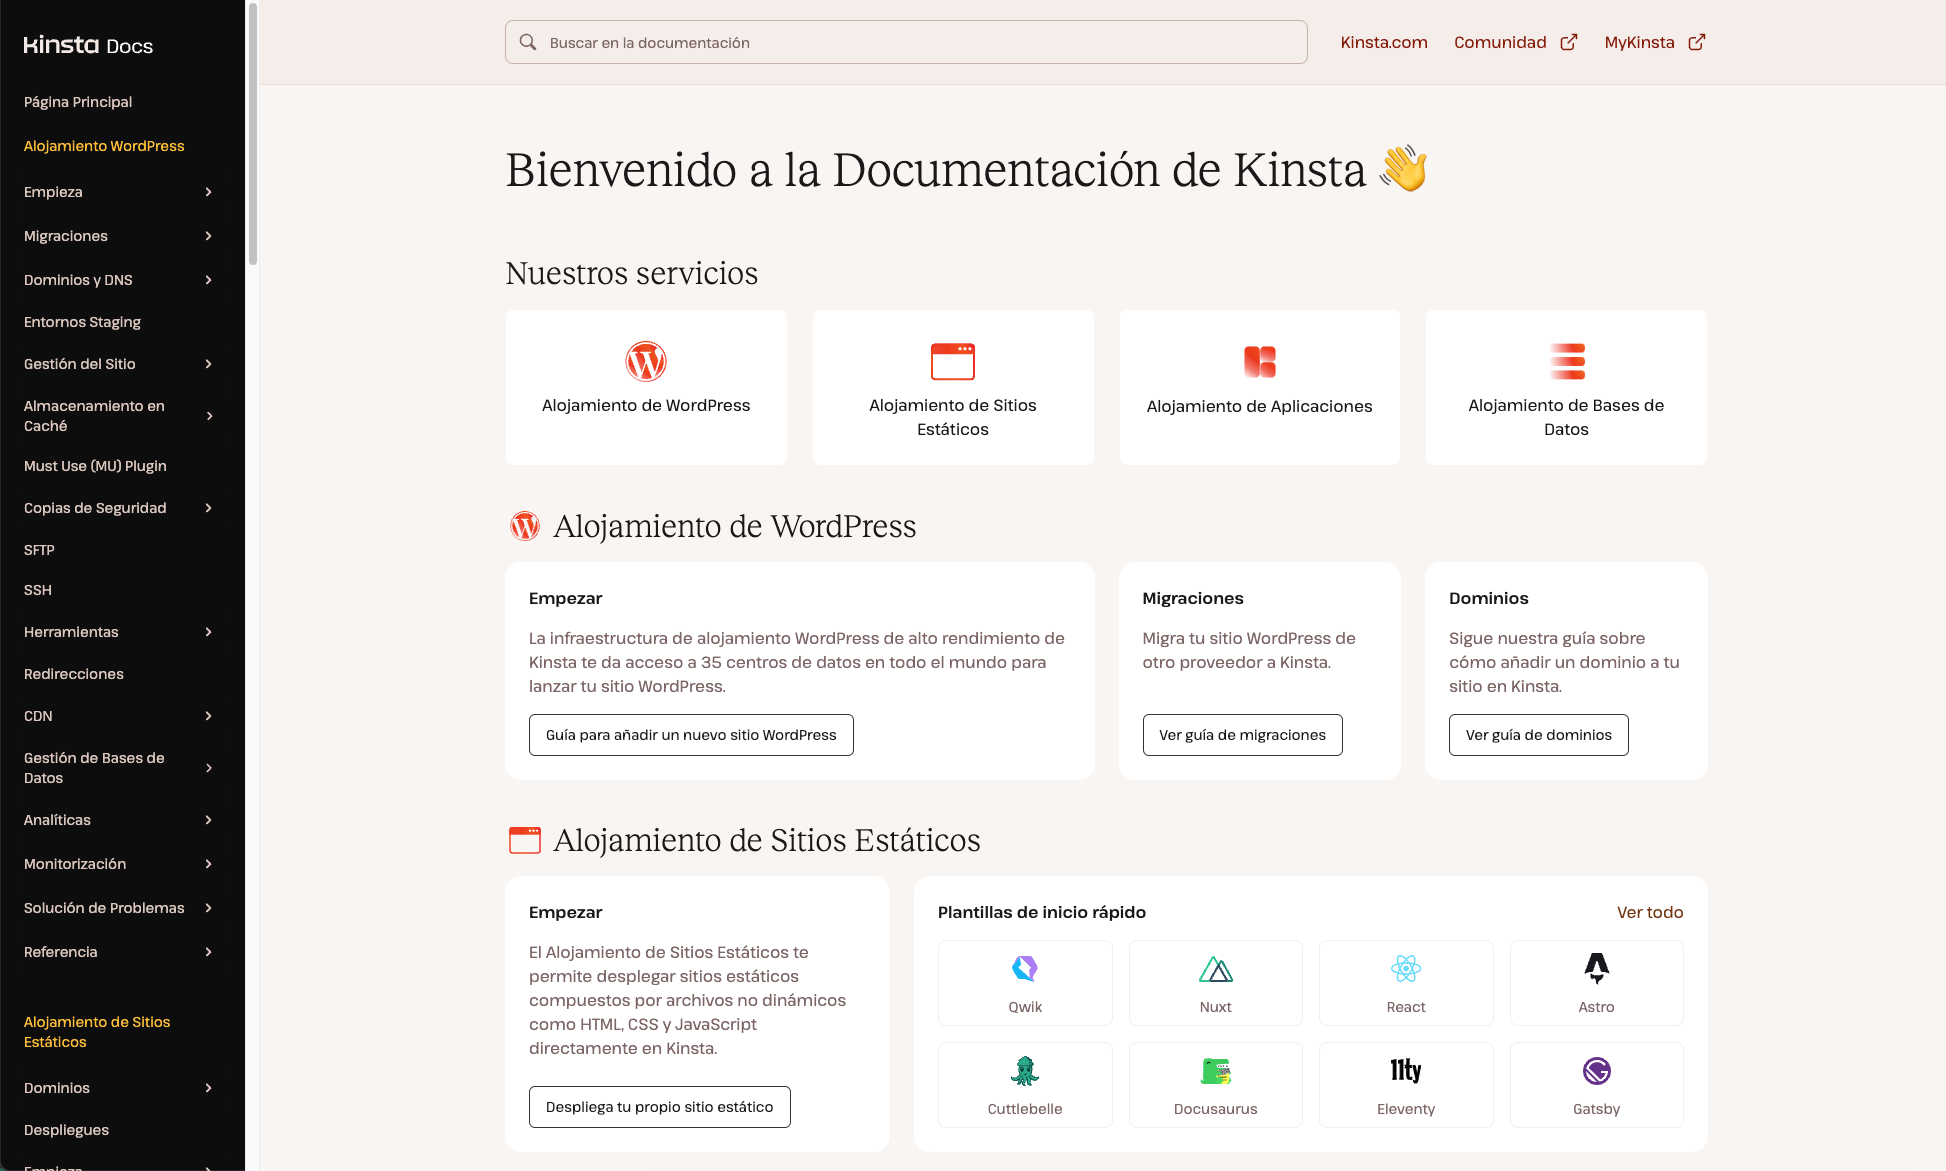 Consulta la página principal de documentación de Kinsta en español.